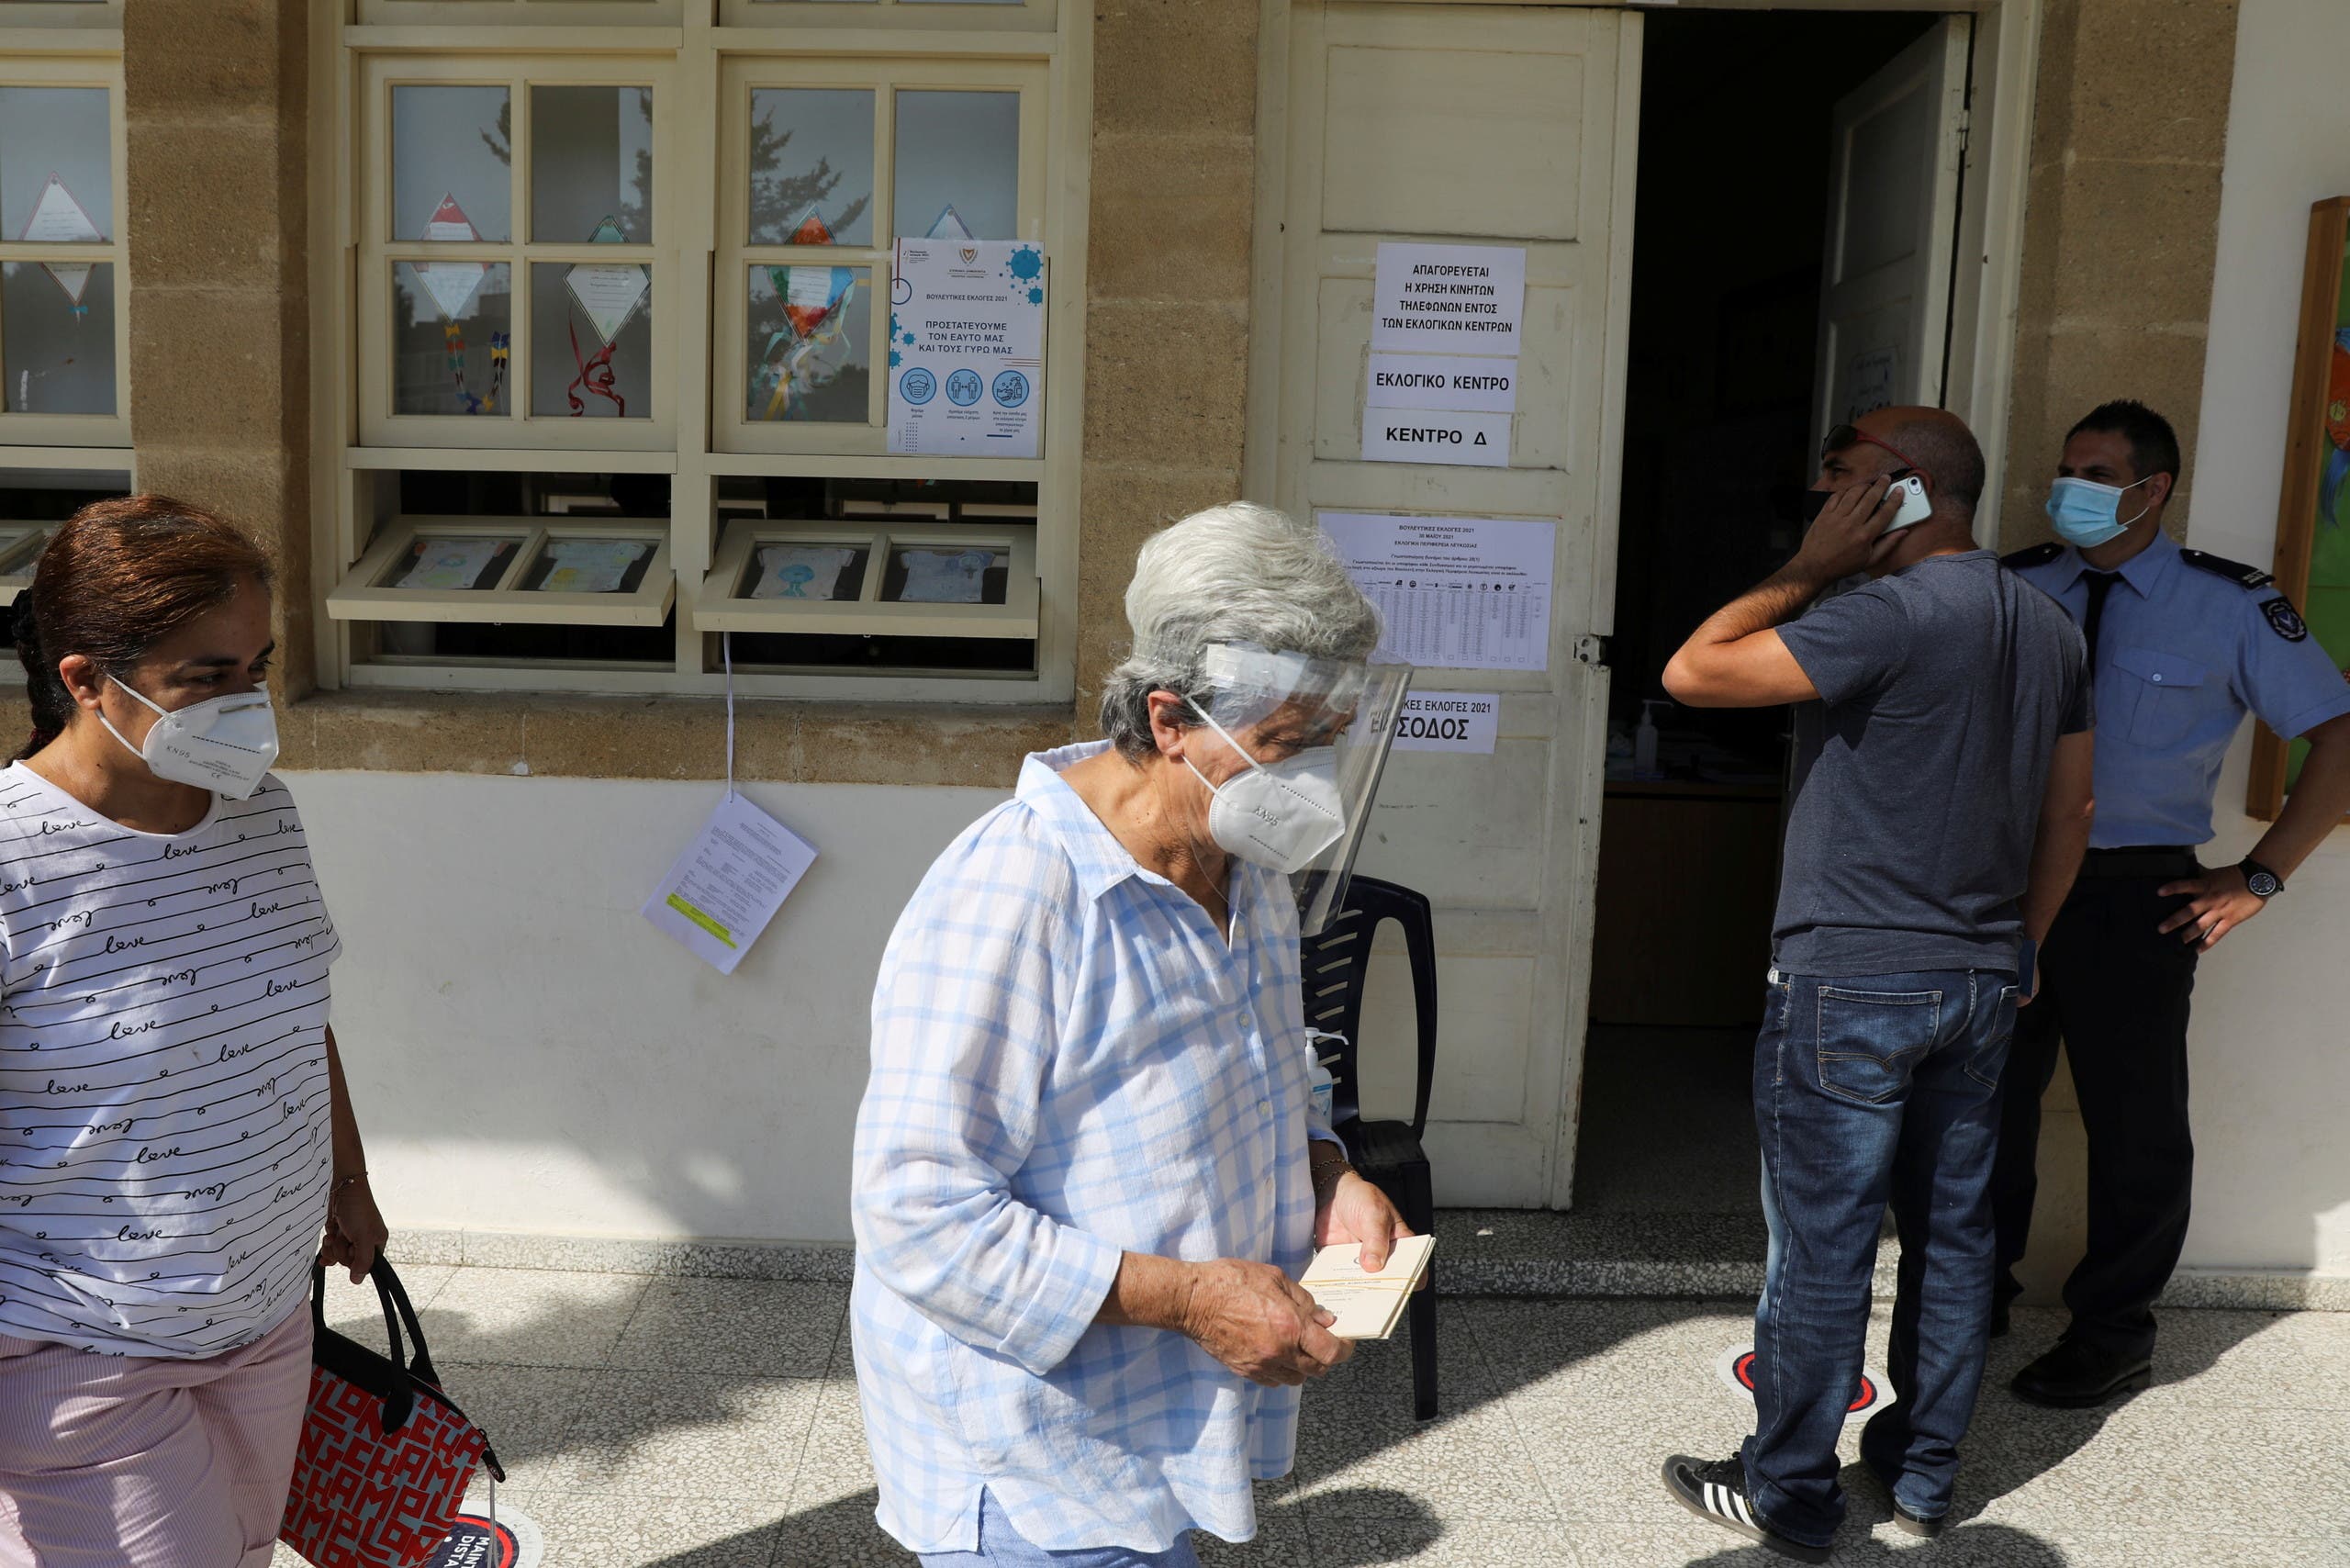 طابور انتظار للتصويت اليوم في قبرص